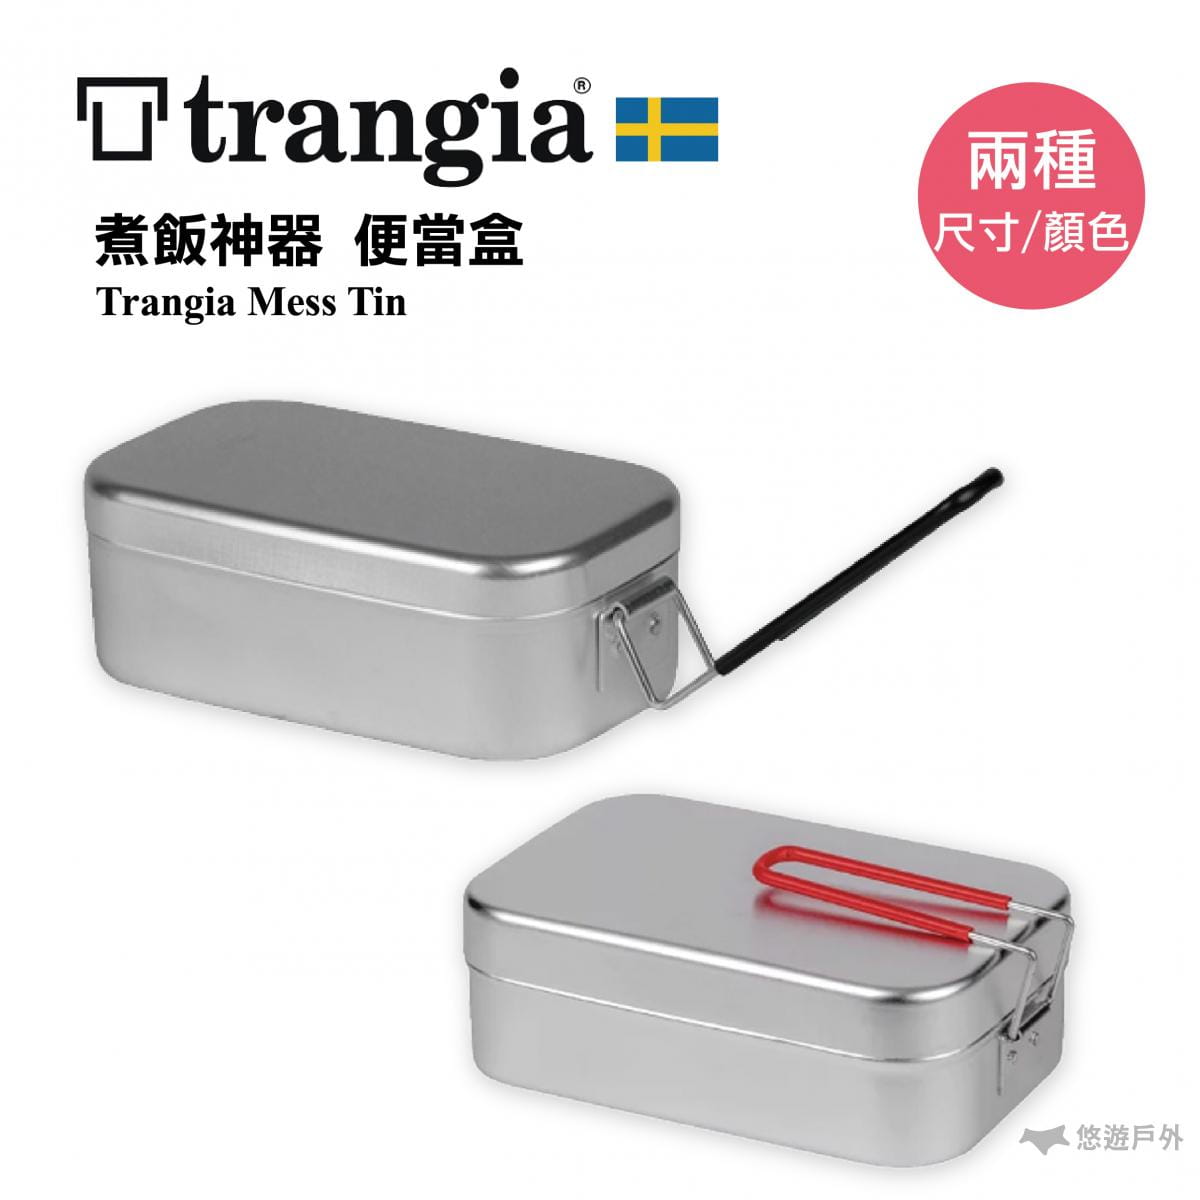 【悠遊戶外】瑞典 Trangia Mess Tin 煮飯神器 (大) 0